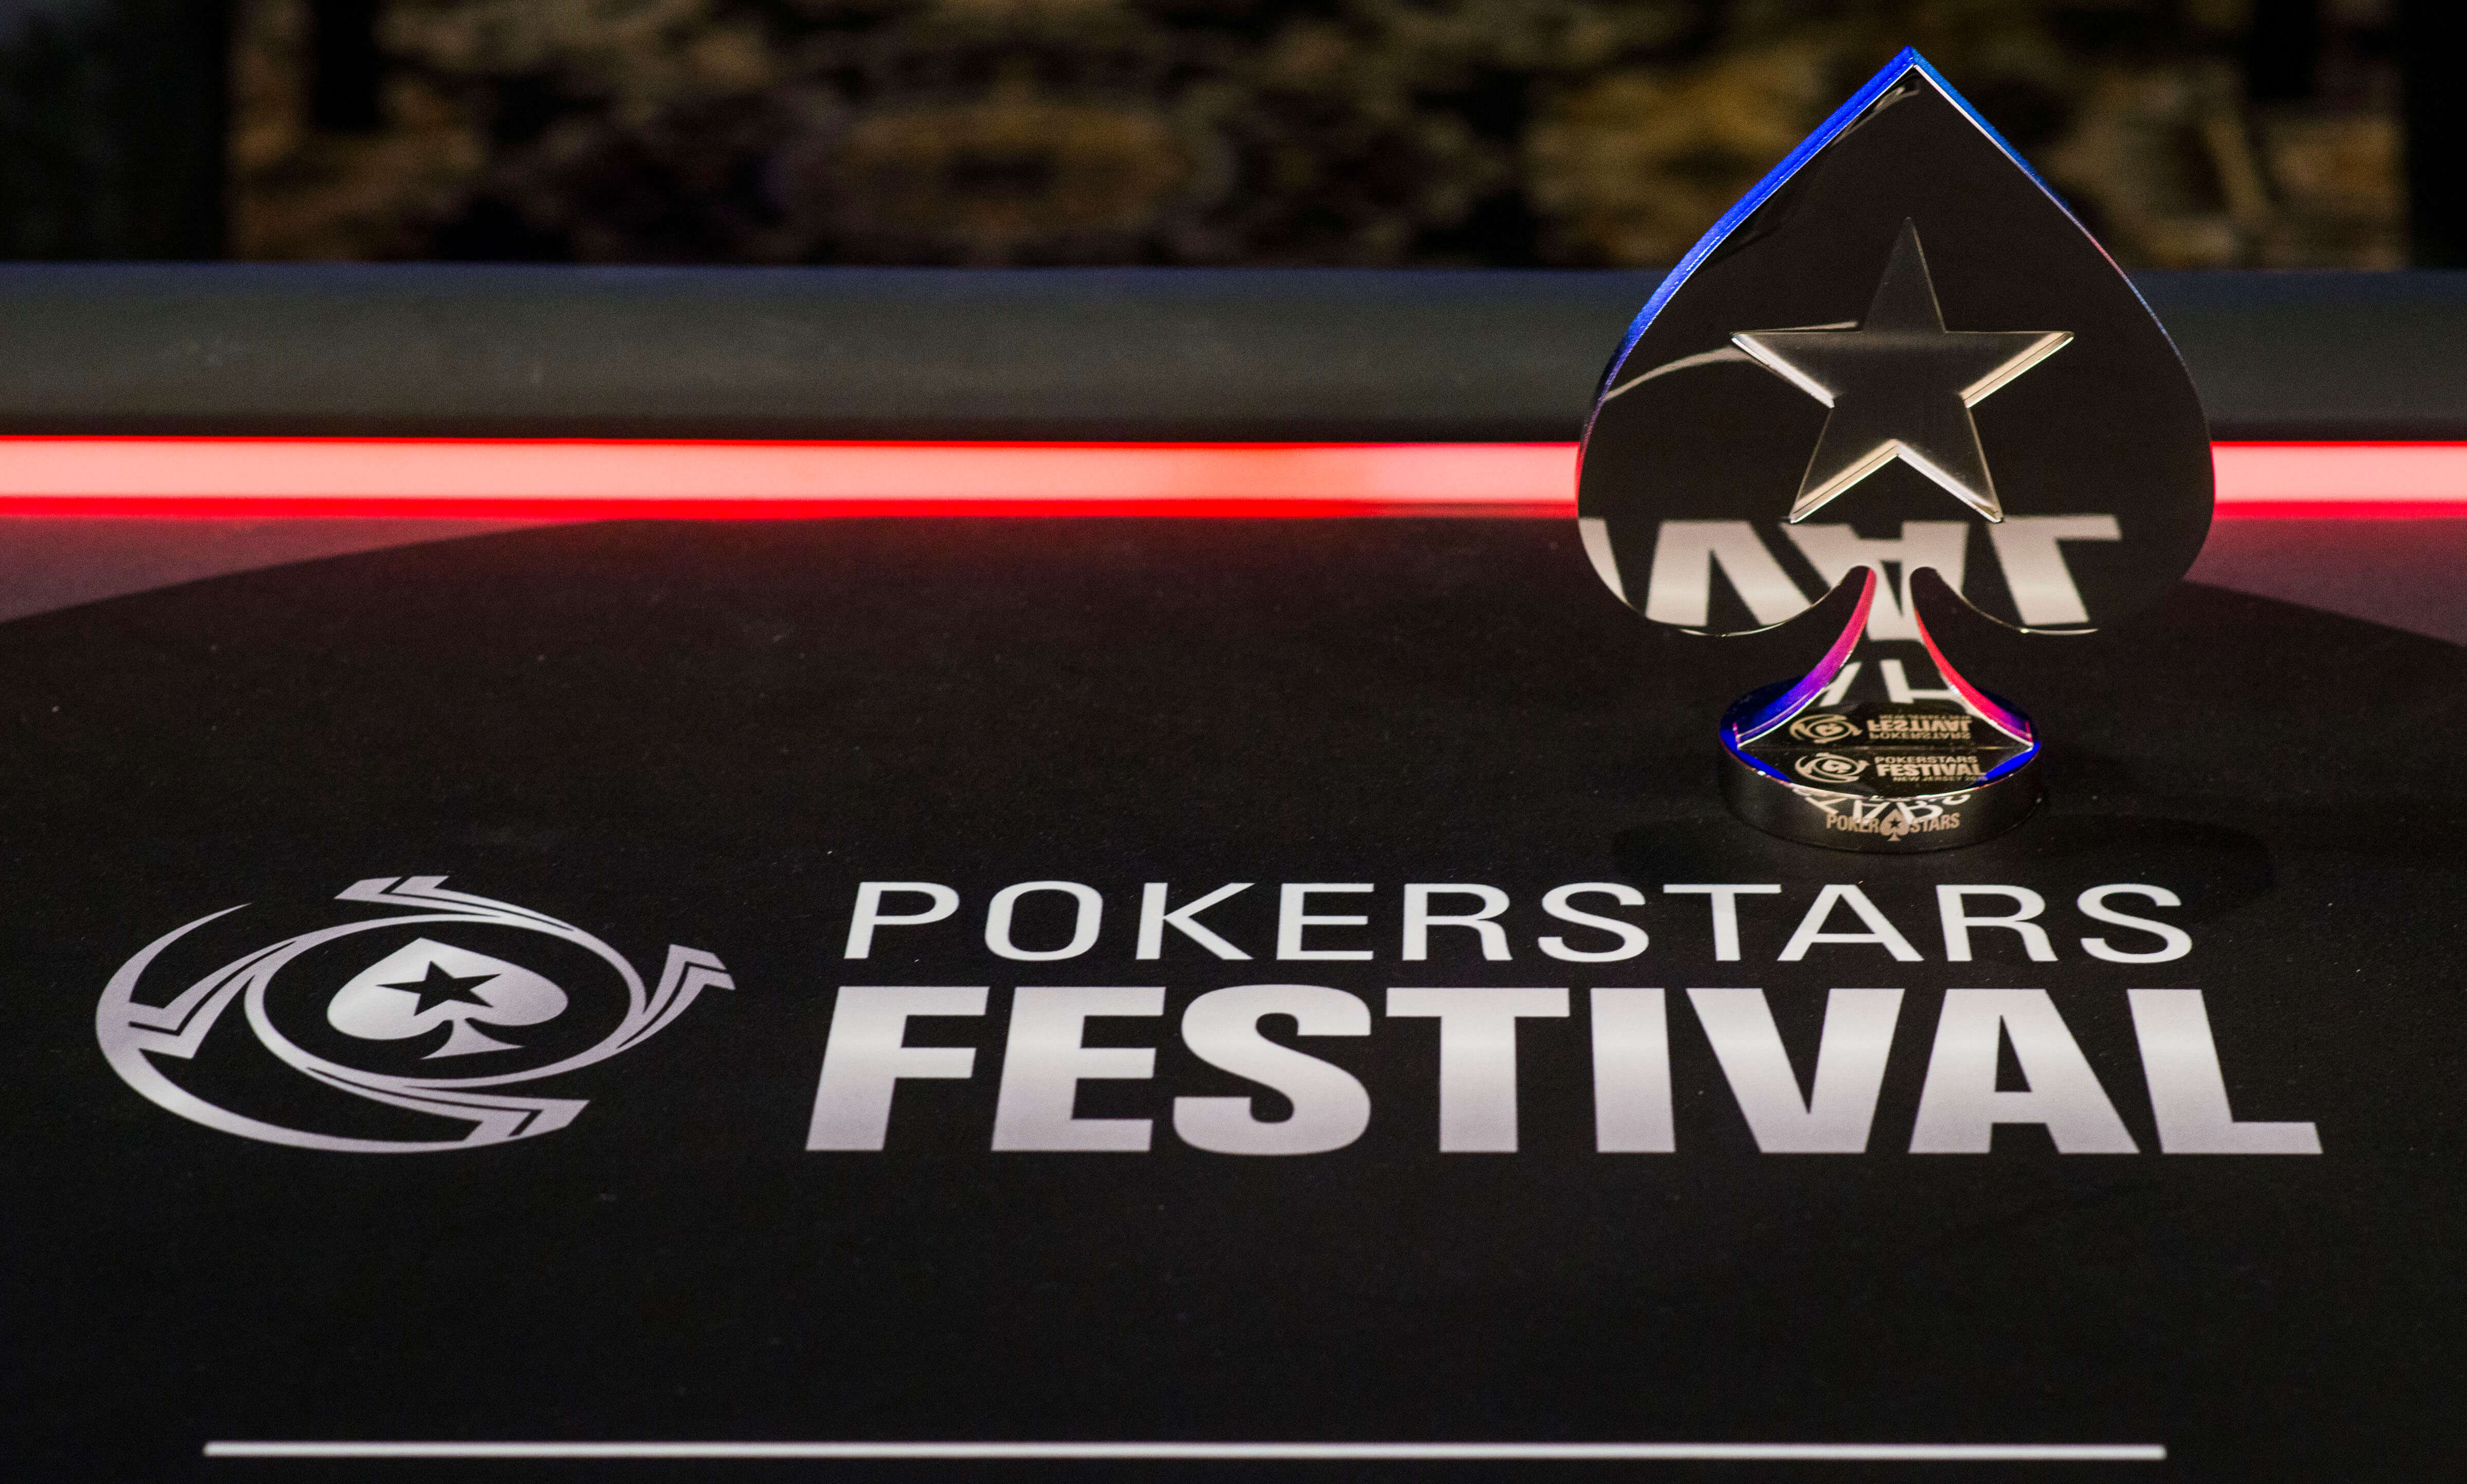 The Star Poker Tournament